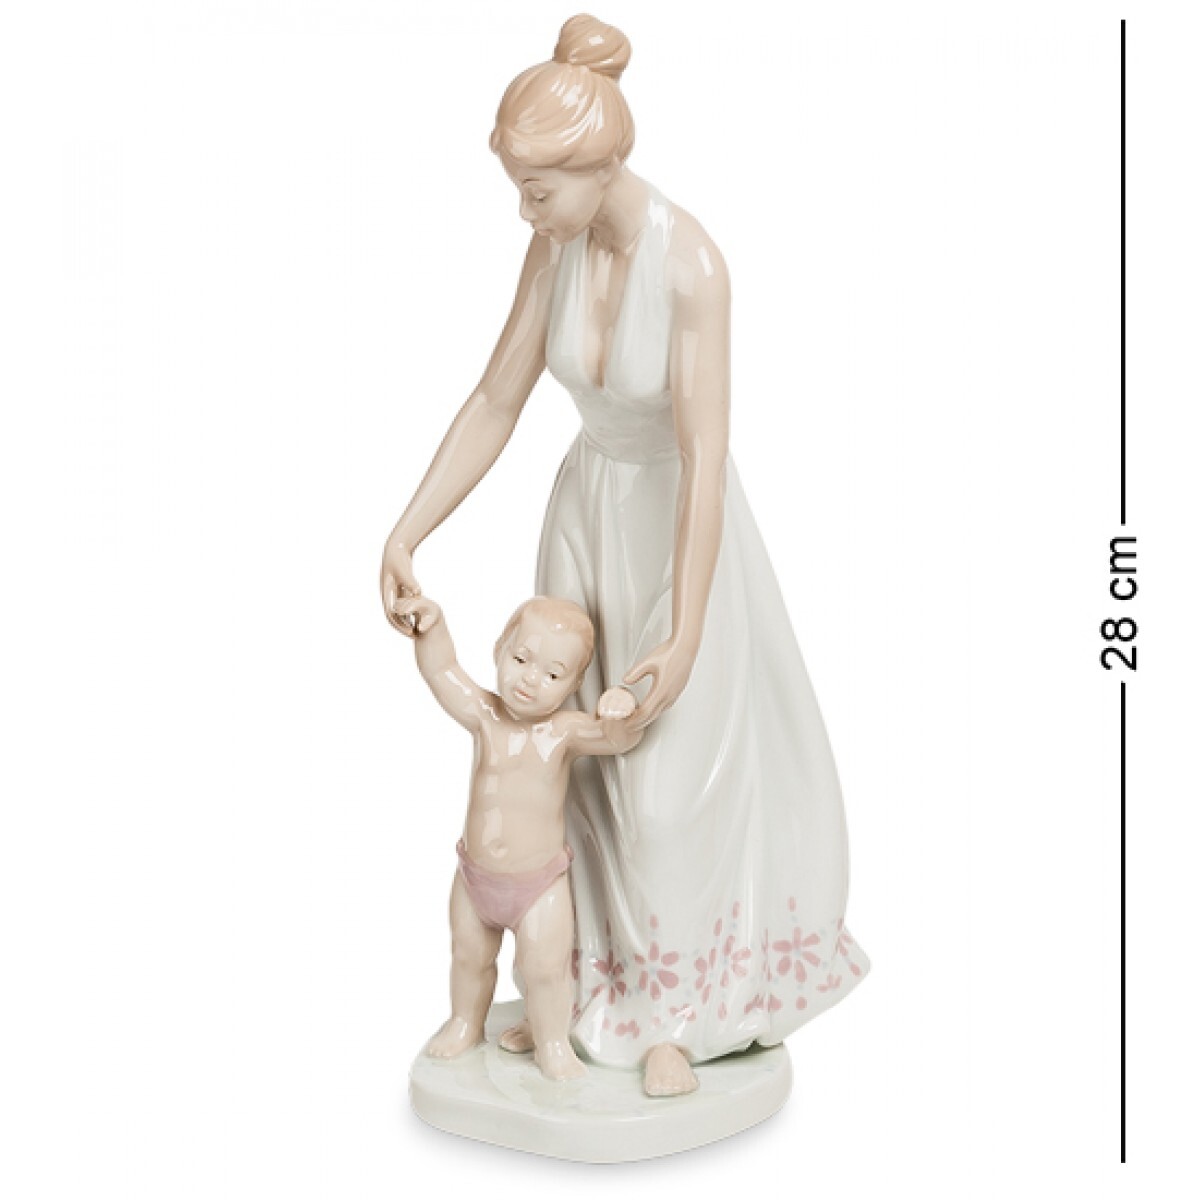 Фигурка мама с ребенком. Статуэтка "мать с сыном" (Pavone). Jp-29/15 фигурка «мальчик с лебедем» (Pavone). Статуэтка "материнство". Статуэтка женщина с ребенком.